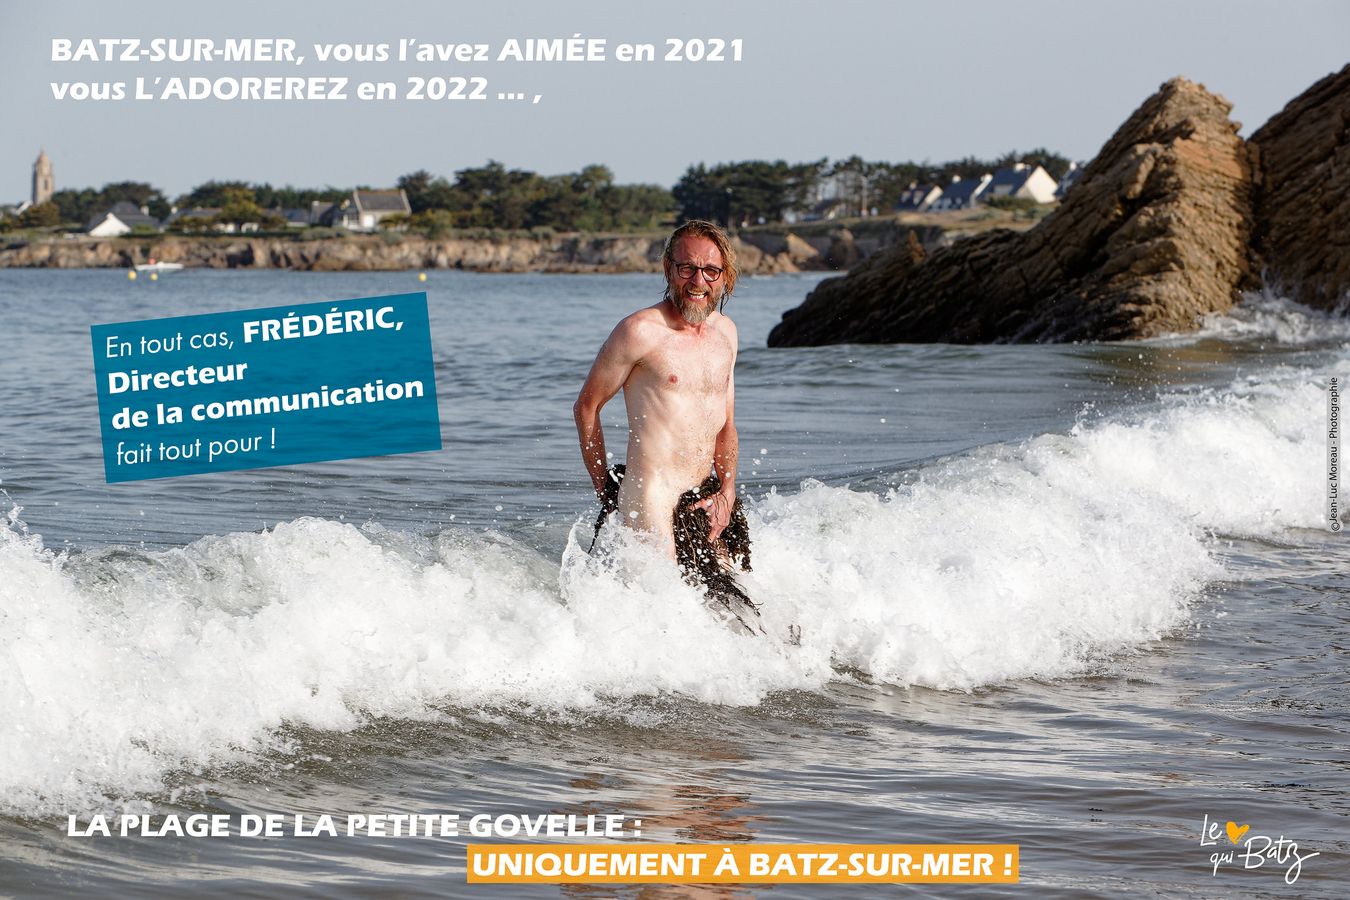 Attractivité des territoires : focus sur une campagne de com' drôle et décalée sur les réseaux sociaux ! REX de Batz-sur-Mer (44)